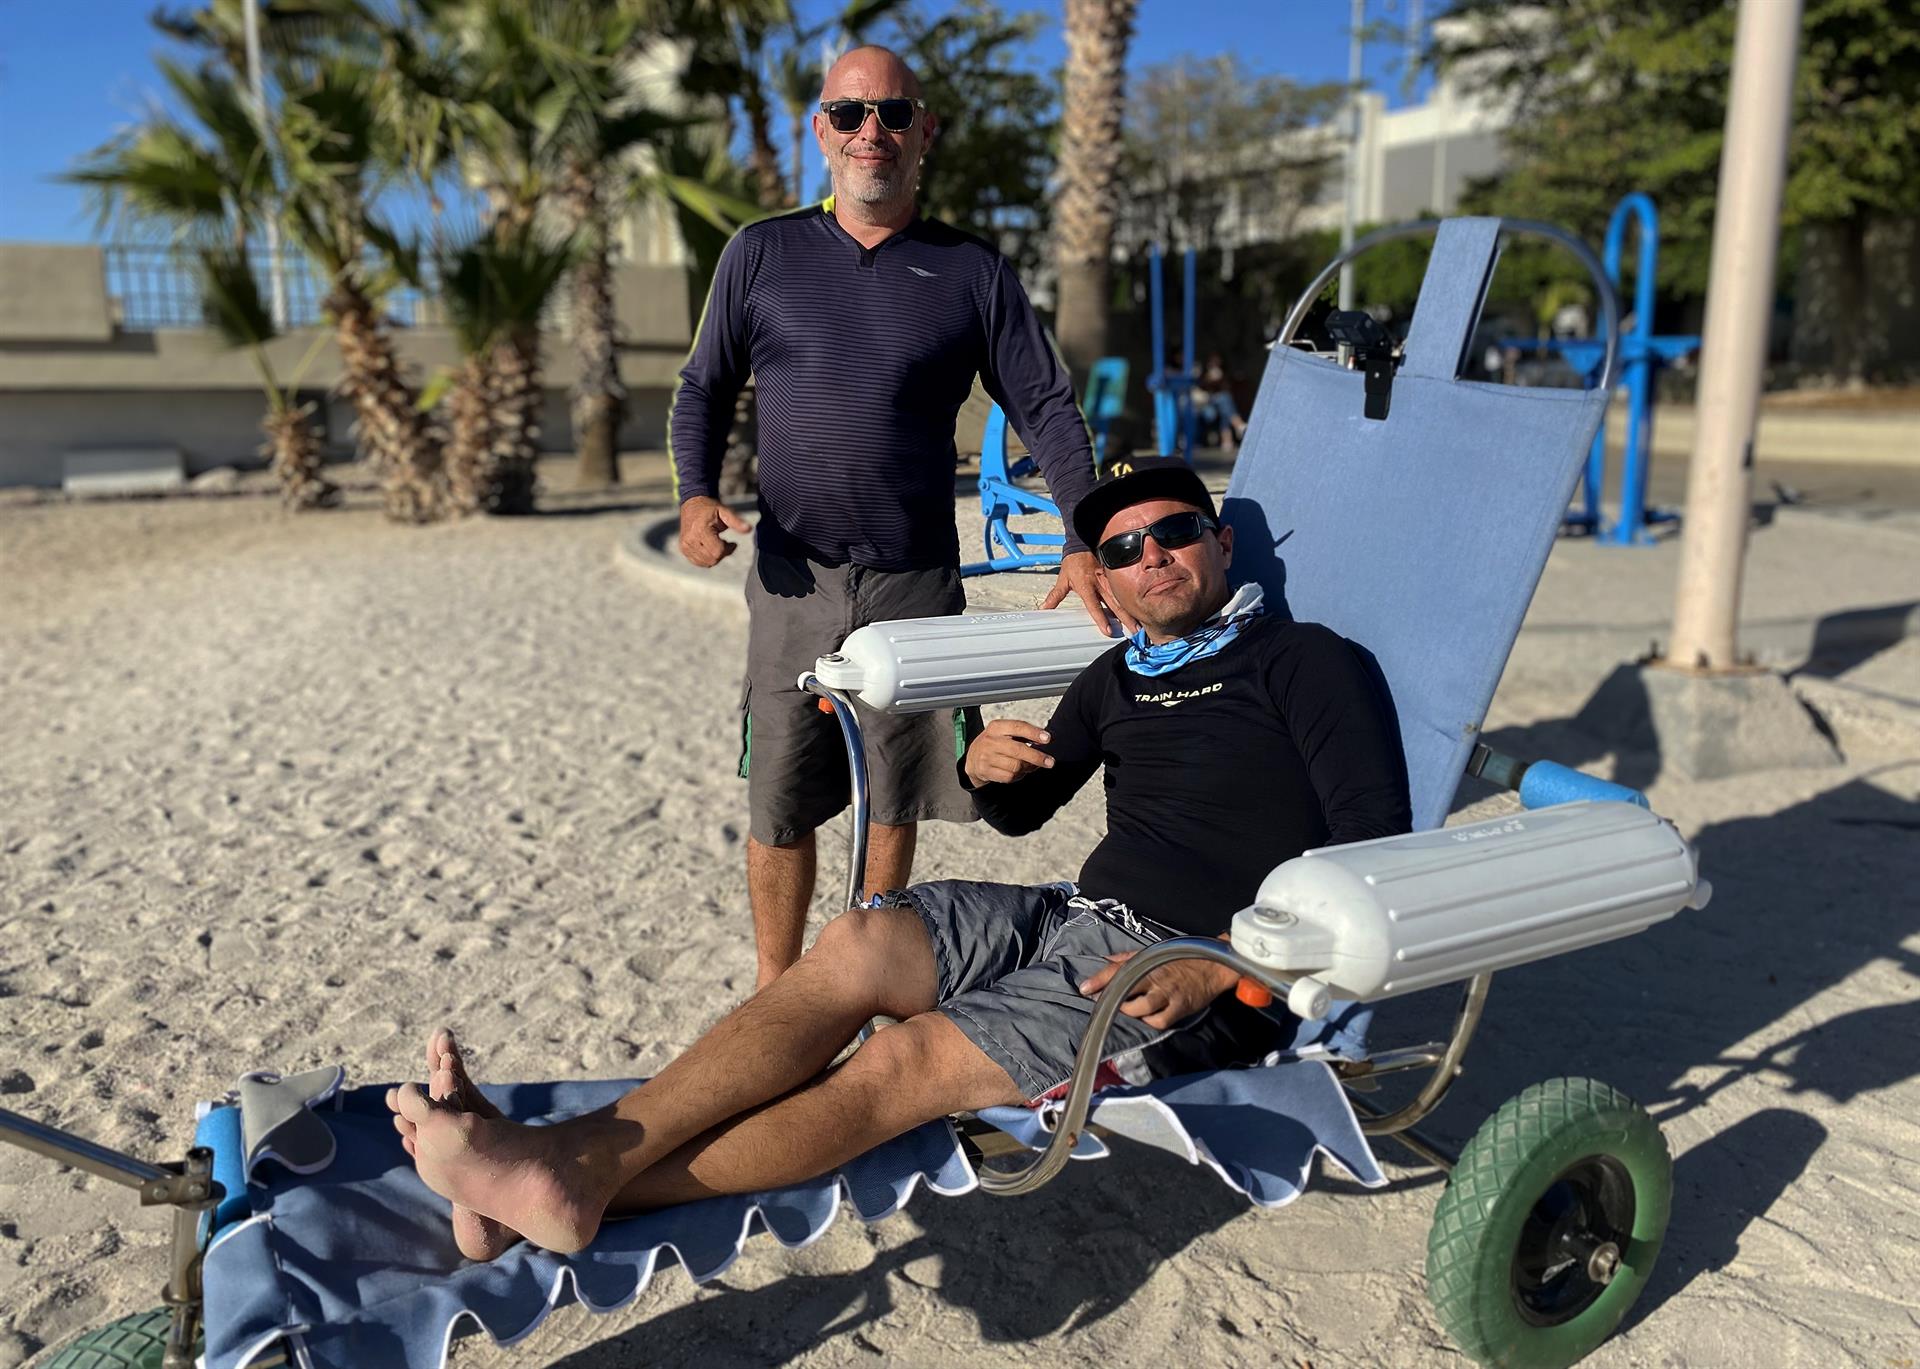 El experto en mecánica automotriz, Andrés Mata (i), y el prestador de servicios turísticos, Jairo Westle, posan junto a una silla de ruedas anfibia el 23 de abril de 2022, en una playa del balneario de La Paz (México). EFE/ Ricardo Mahatma
